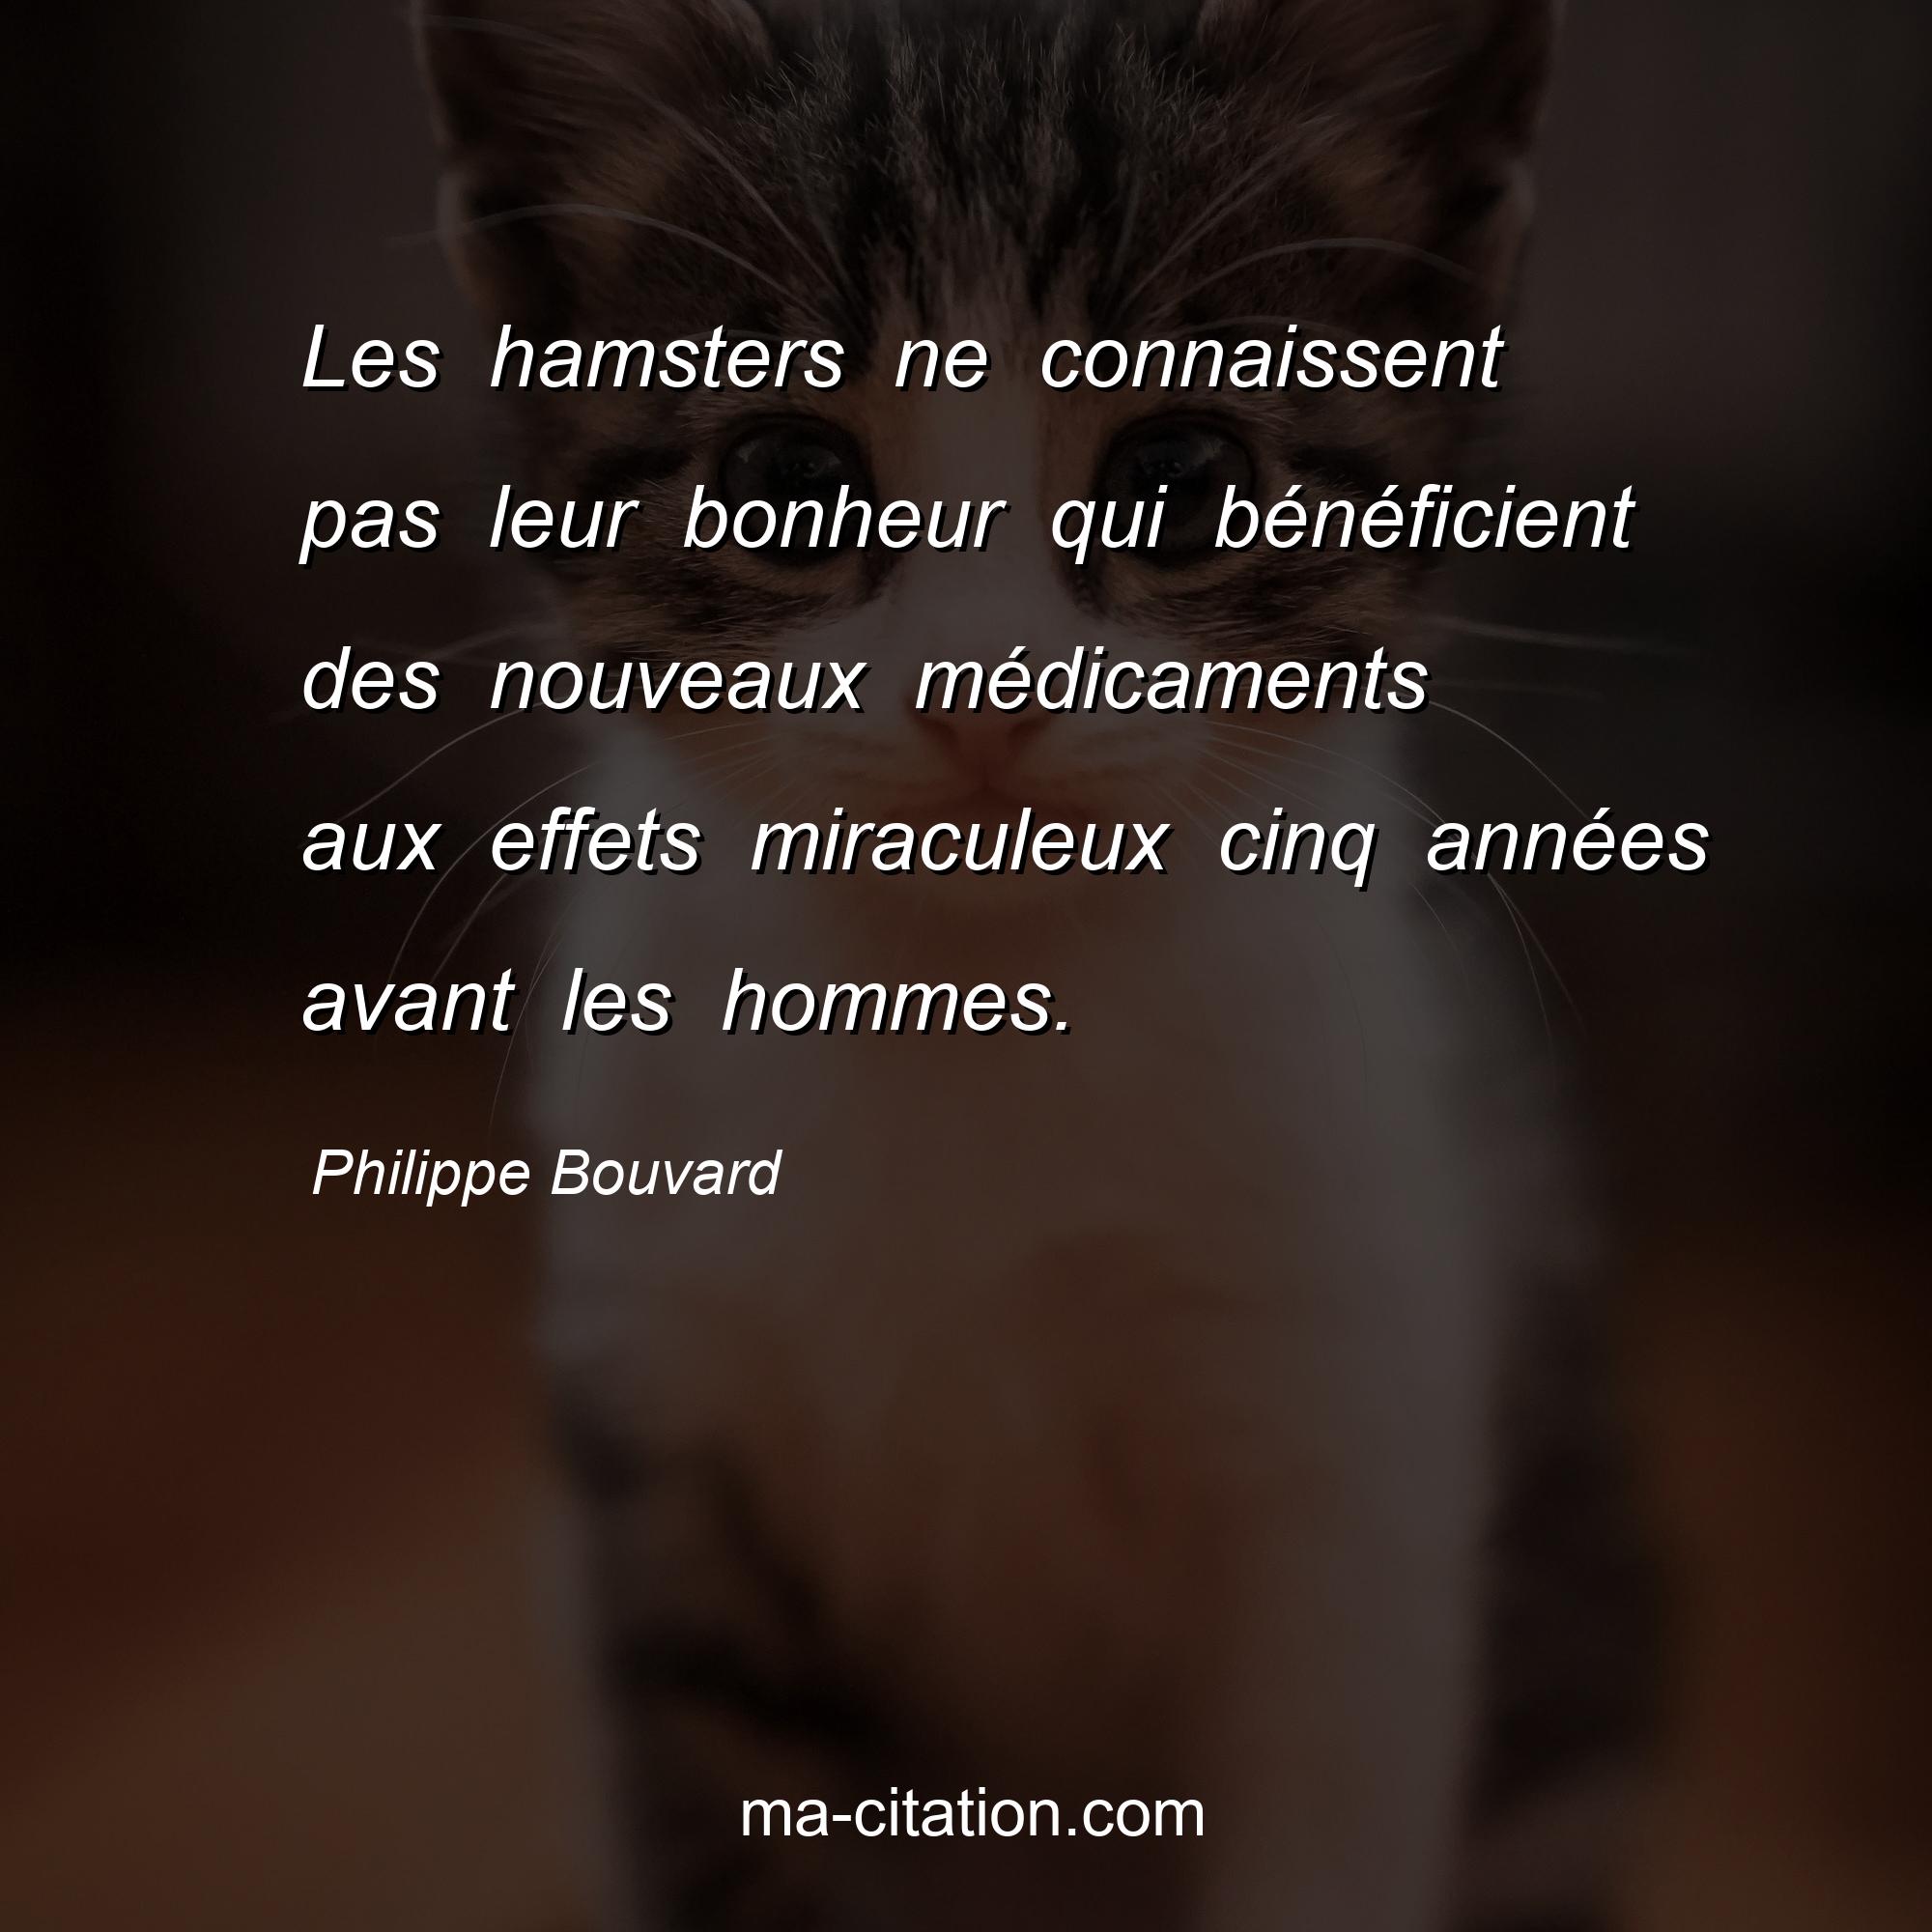 Philippe Bouvard : Les hamsters ne connaissent pas leur bonheur qui bénéficient des nouveaux médicaments aux effets miraculeux cinq années avant les hommes.